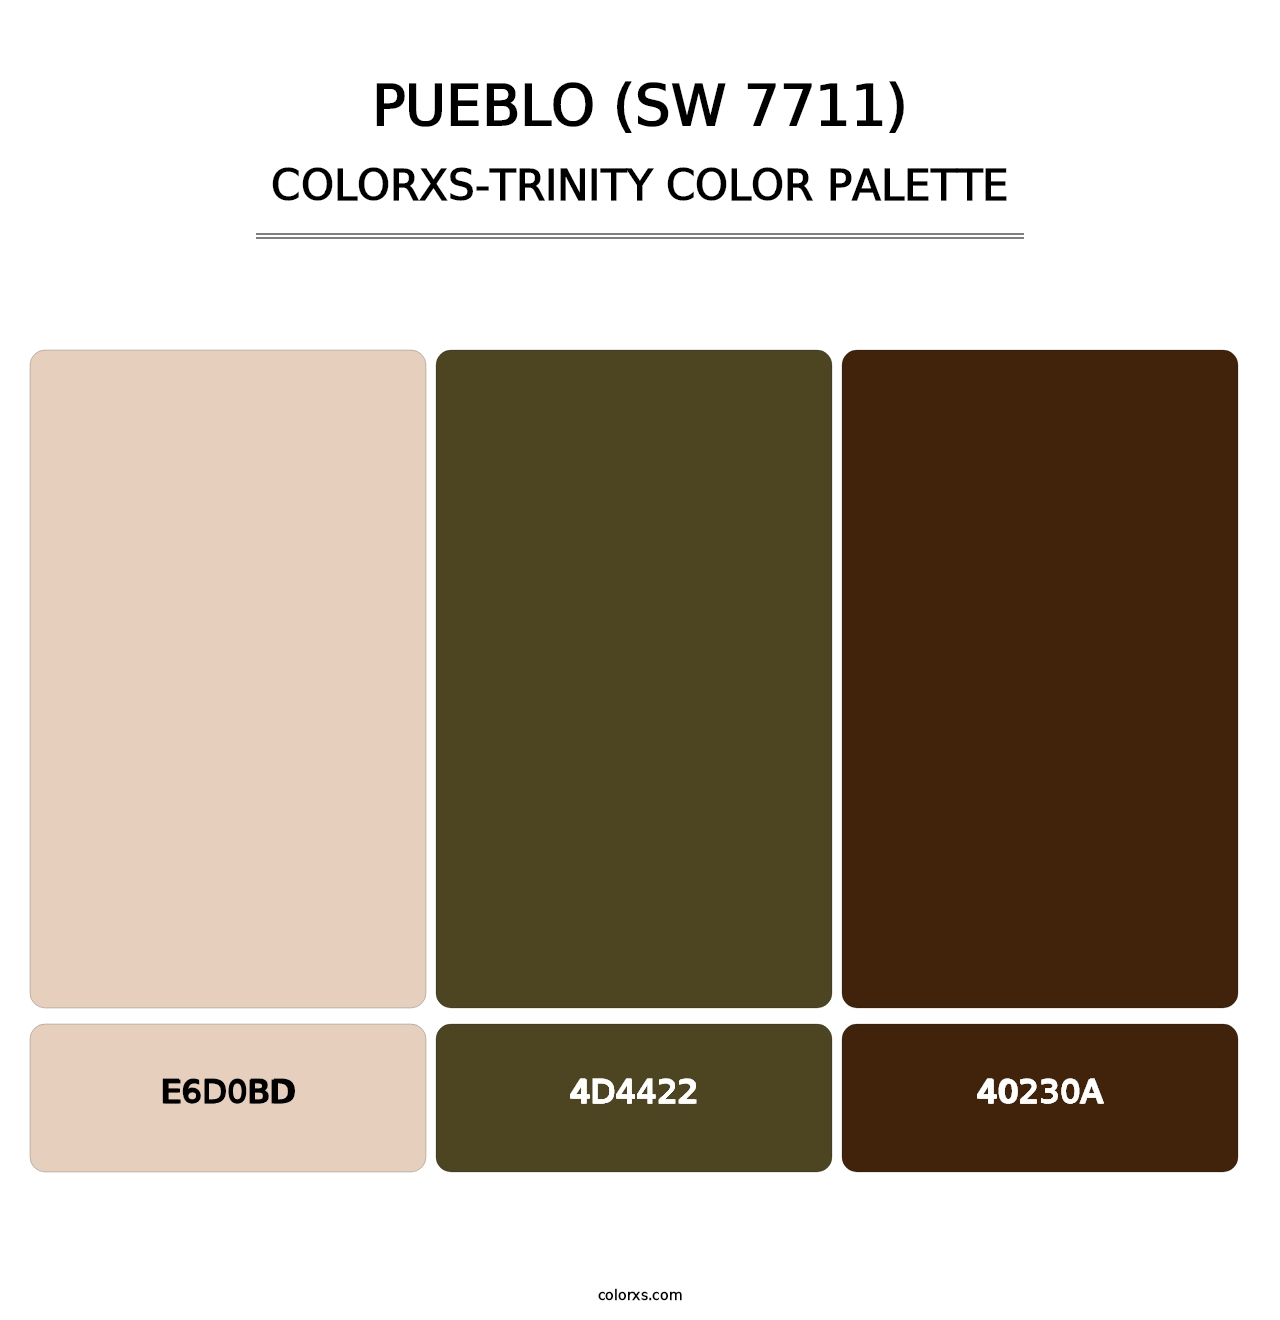 Pueblo (SW 7711) - Colorxs Trinity Palette